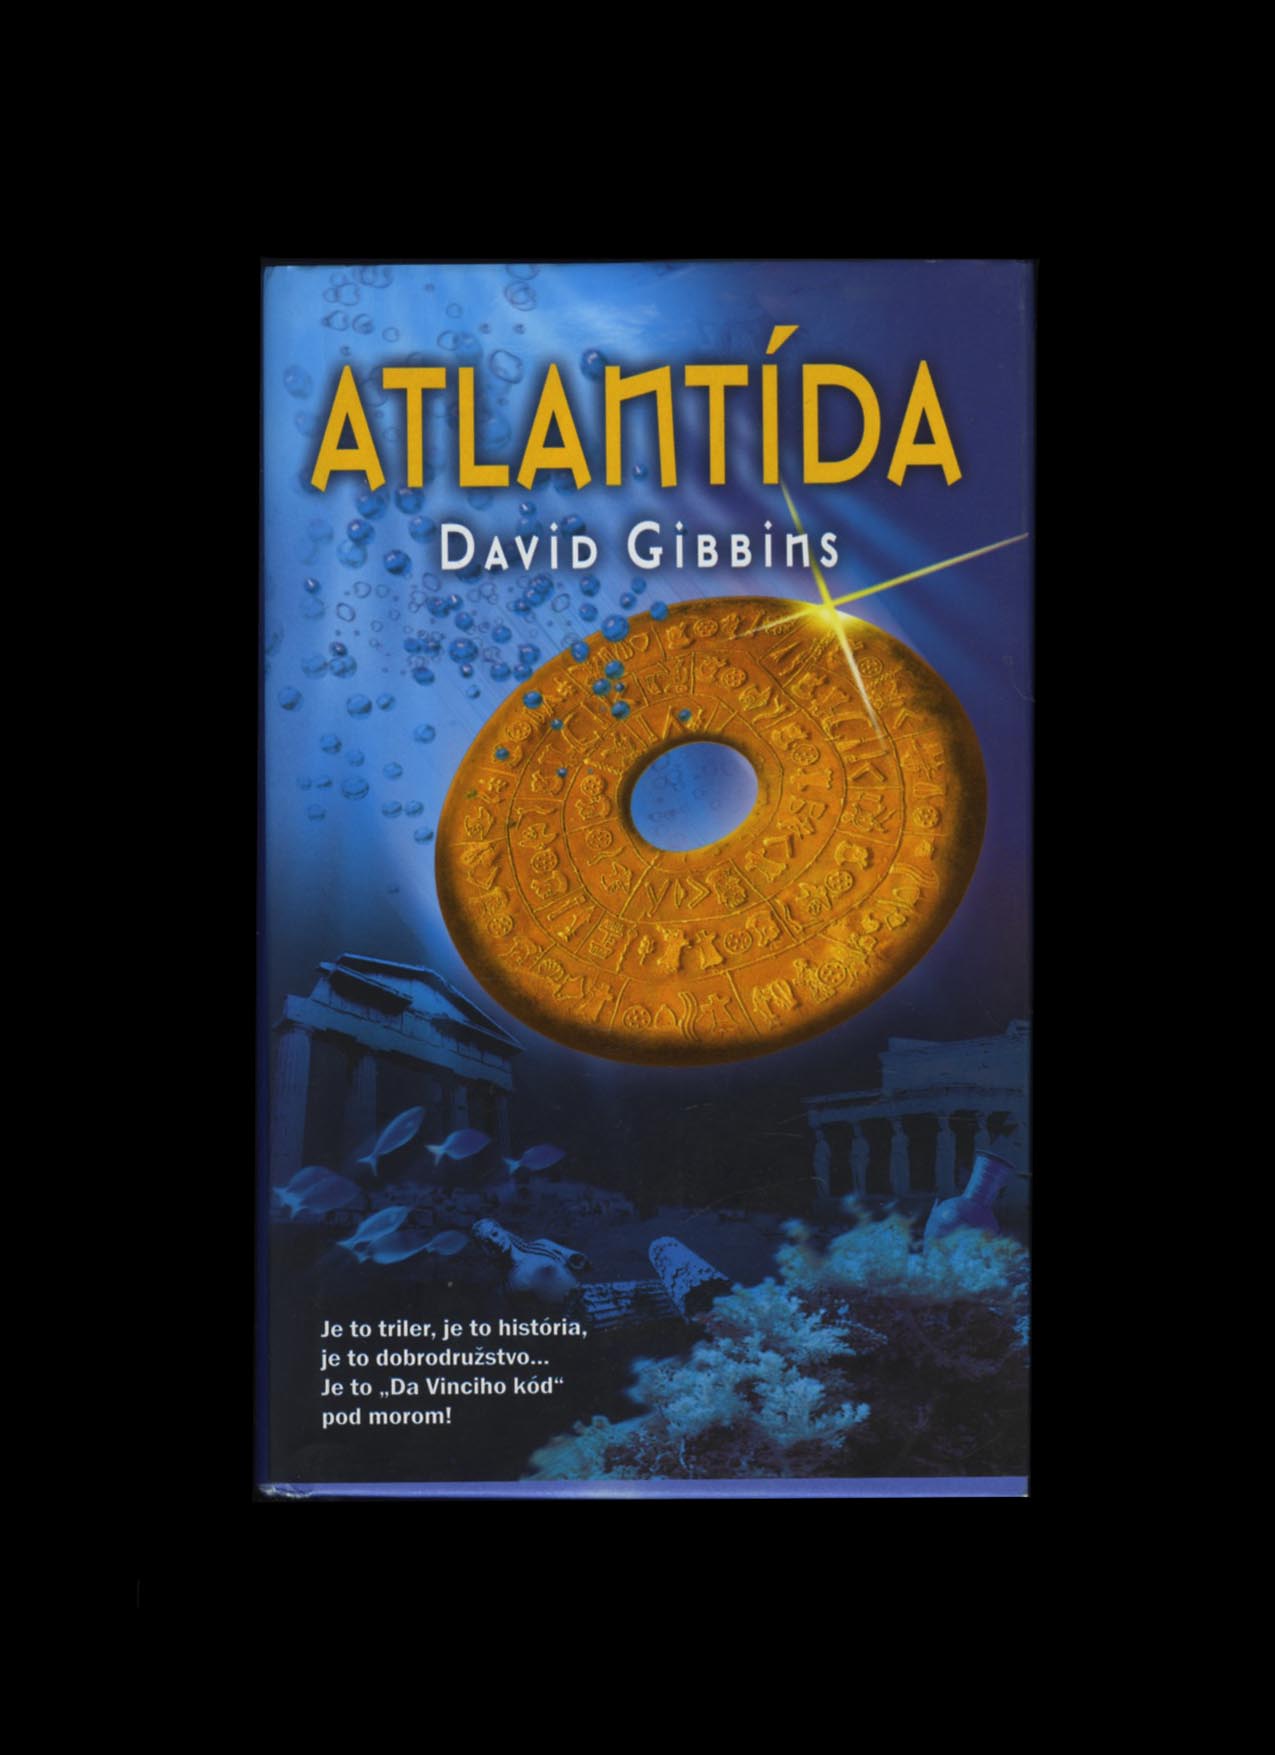 Atlantída (David Gibbins)